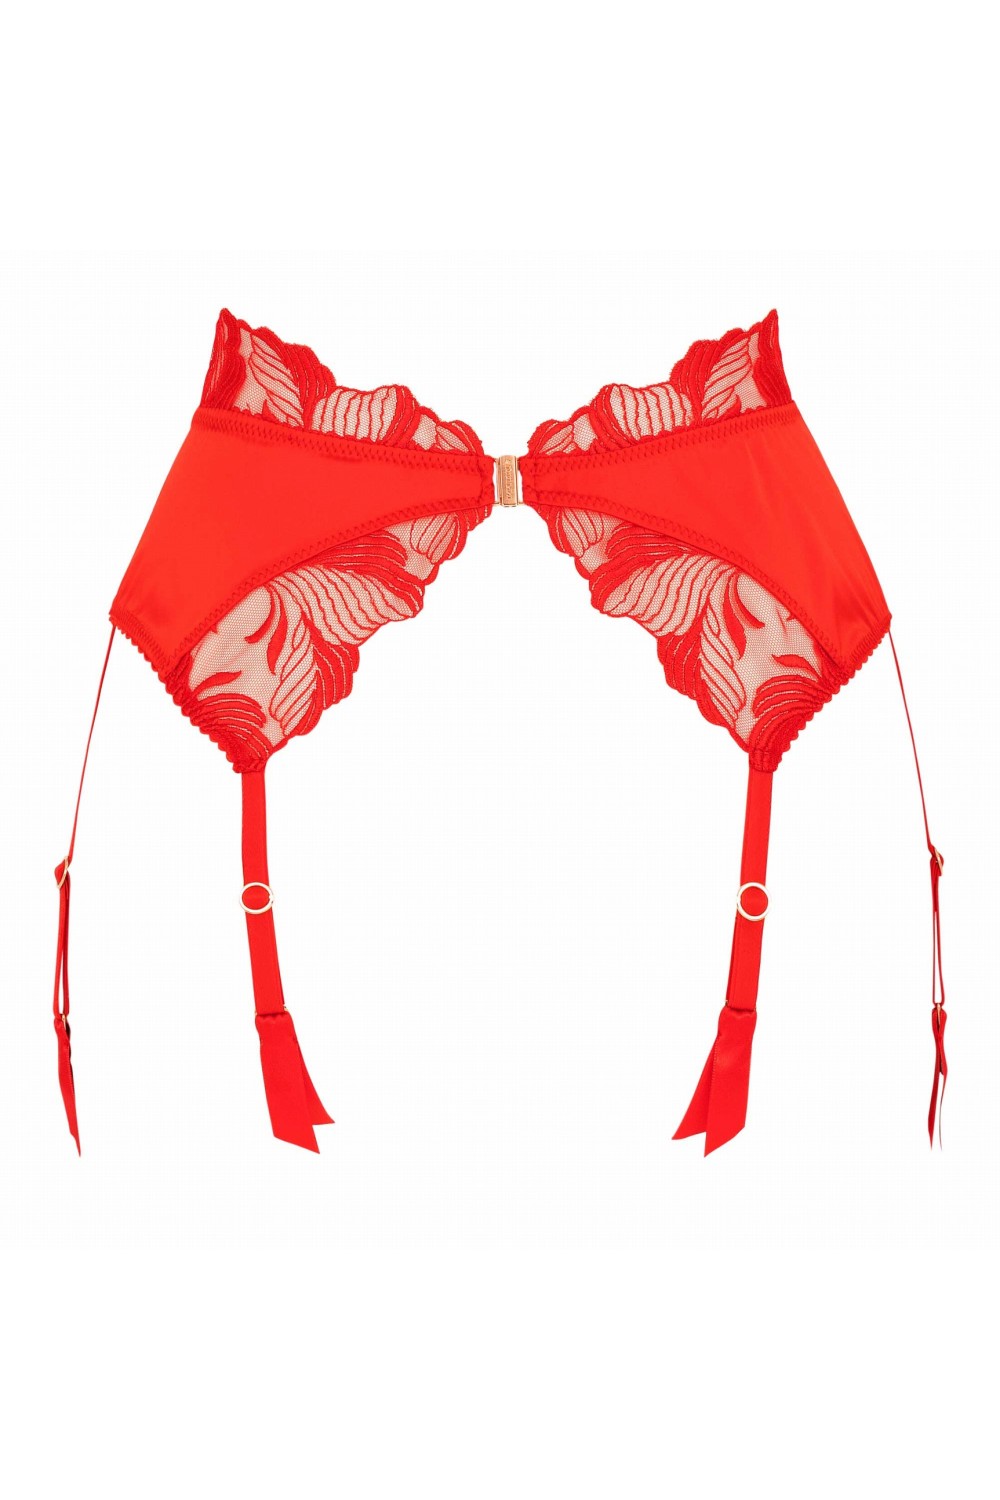 Libertine suspender - Luxury lingerie – Impudique Official Website